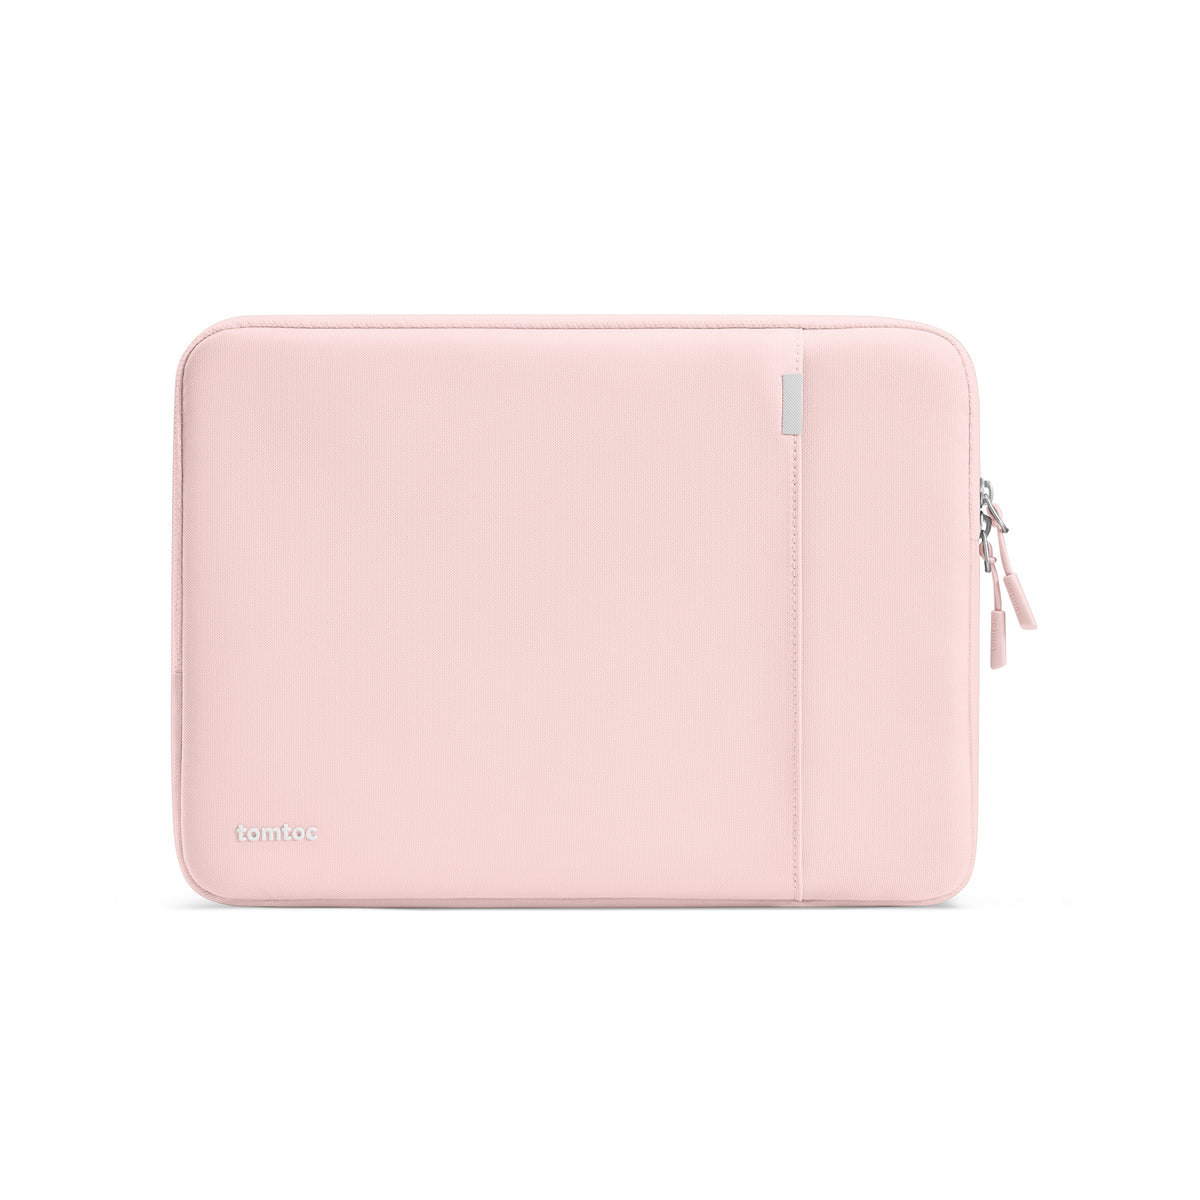 tomtoc 14 Inch Versatile 360 Protective MacBook Sleeve - Pink